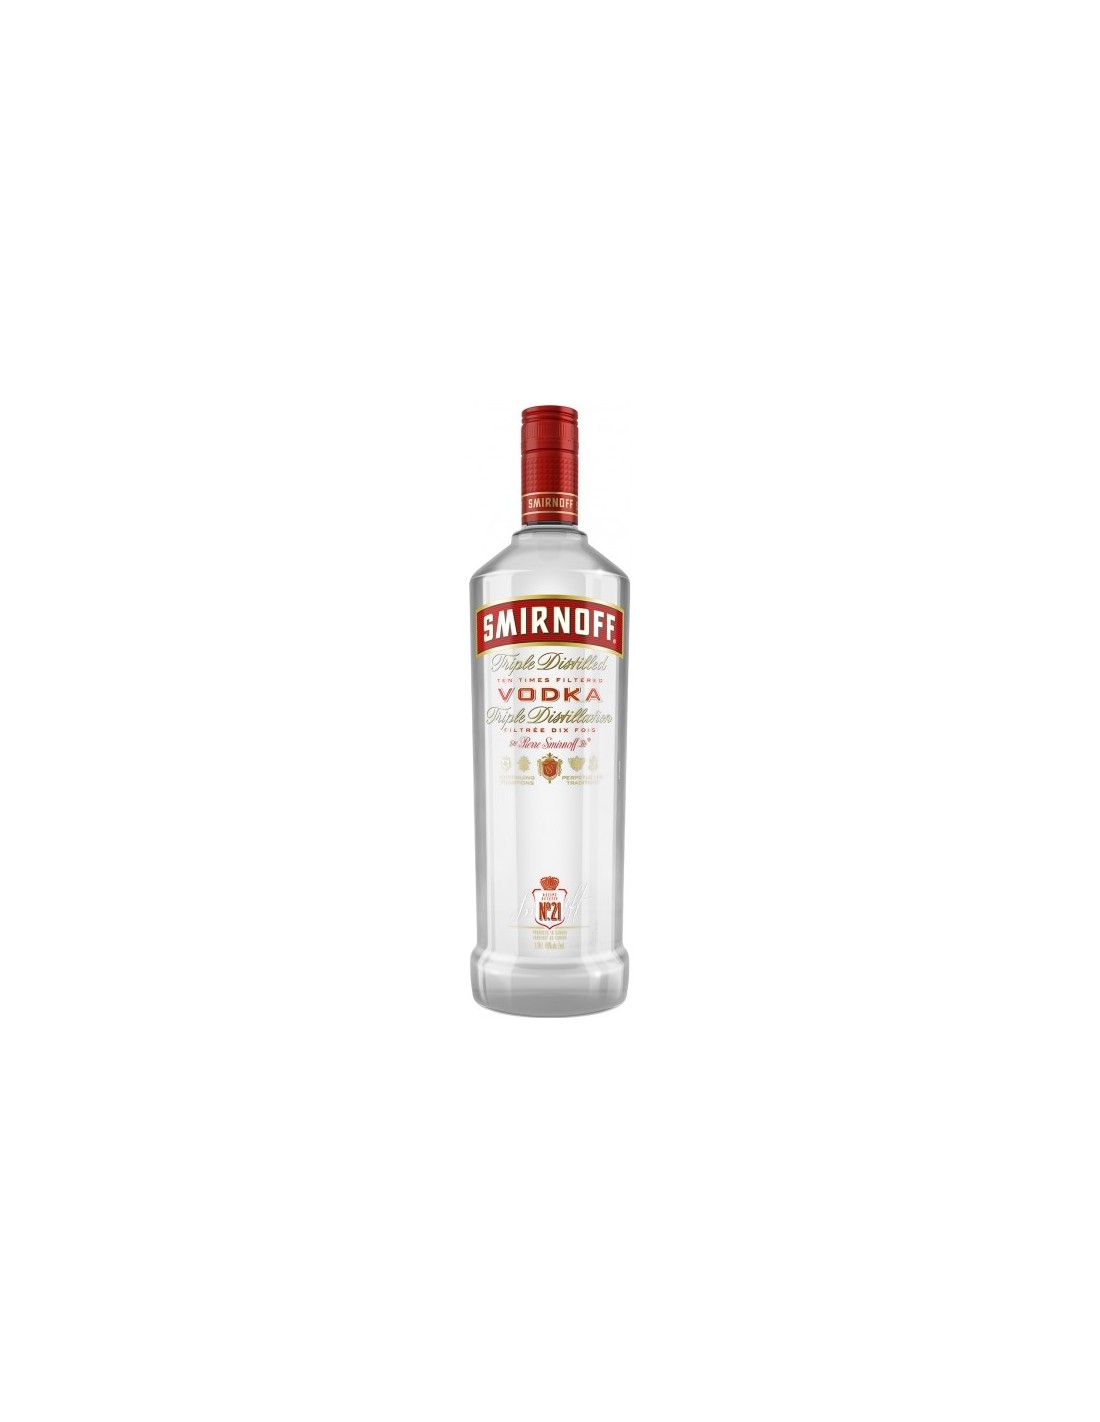 Vodca Smirnoff Red, 1L, 40% alc., Rusia alcooldiscount.ro